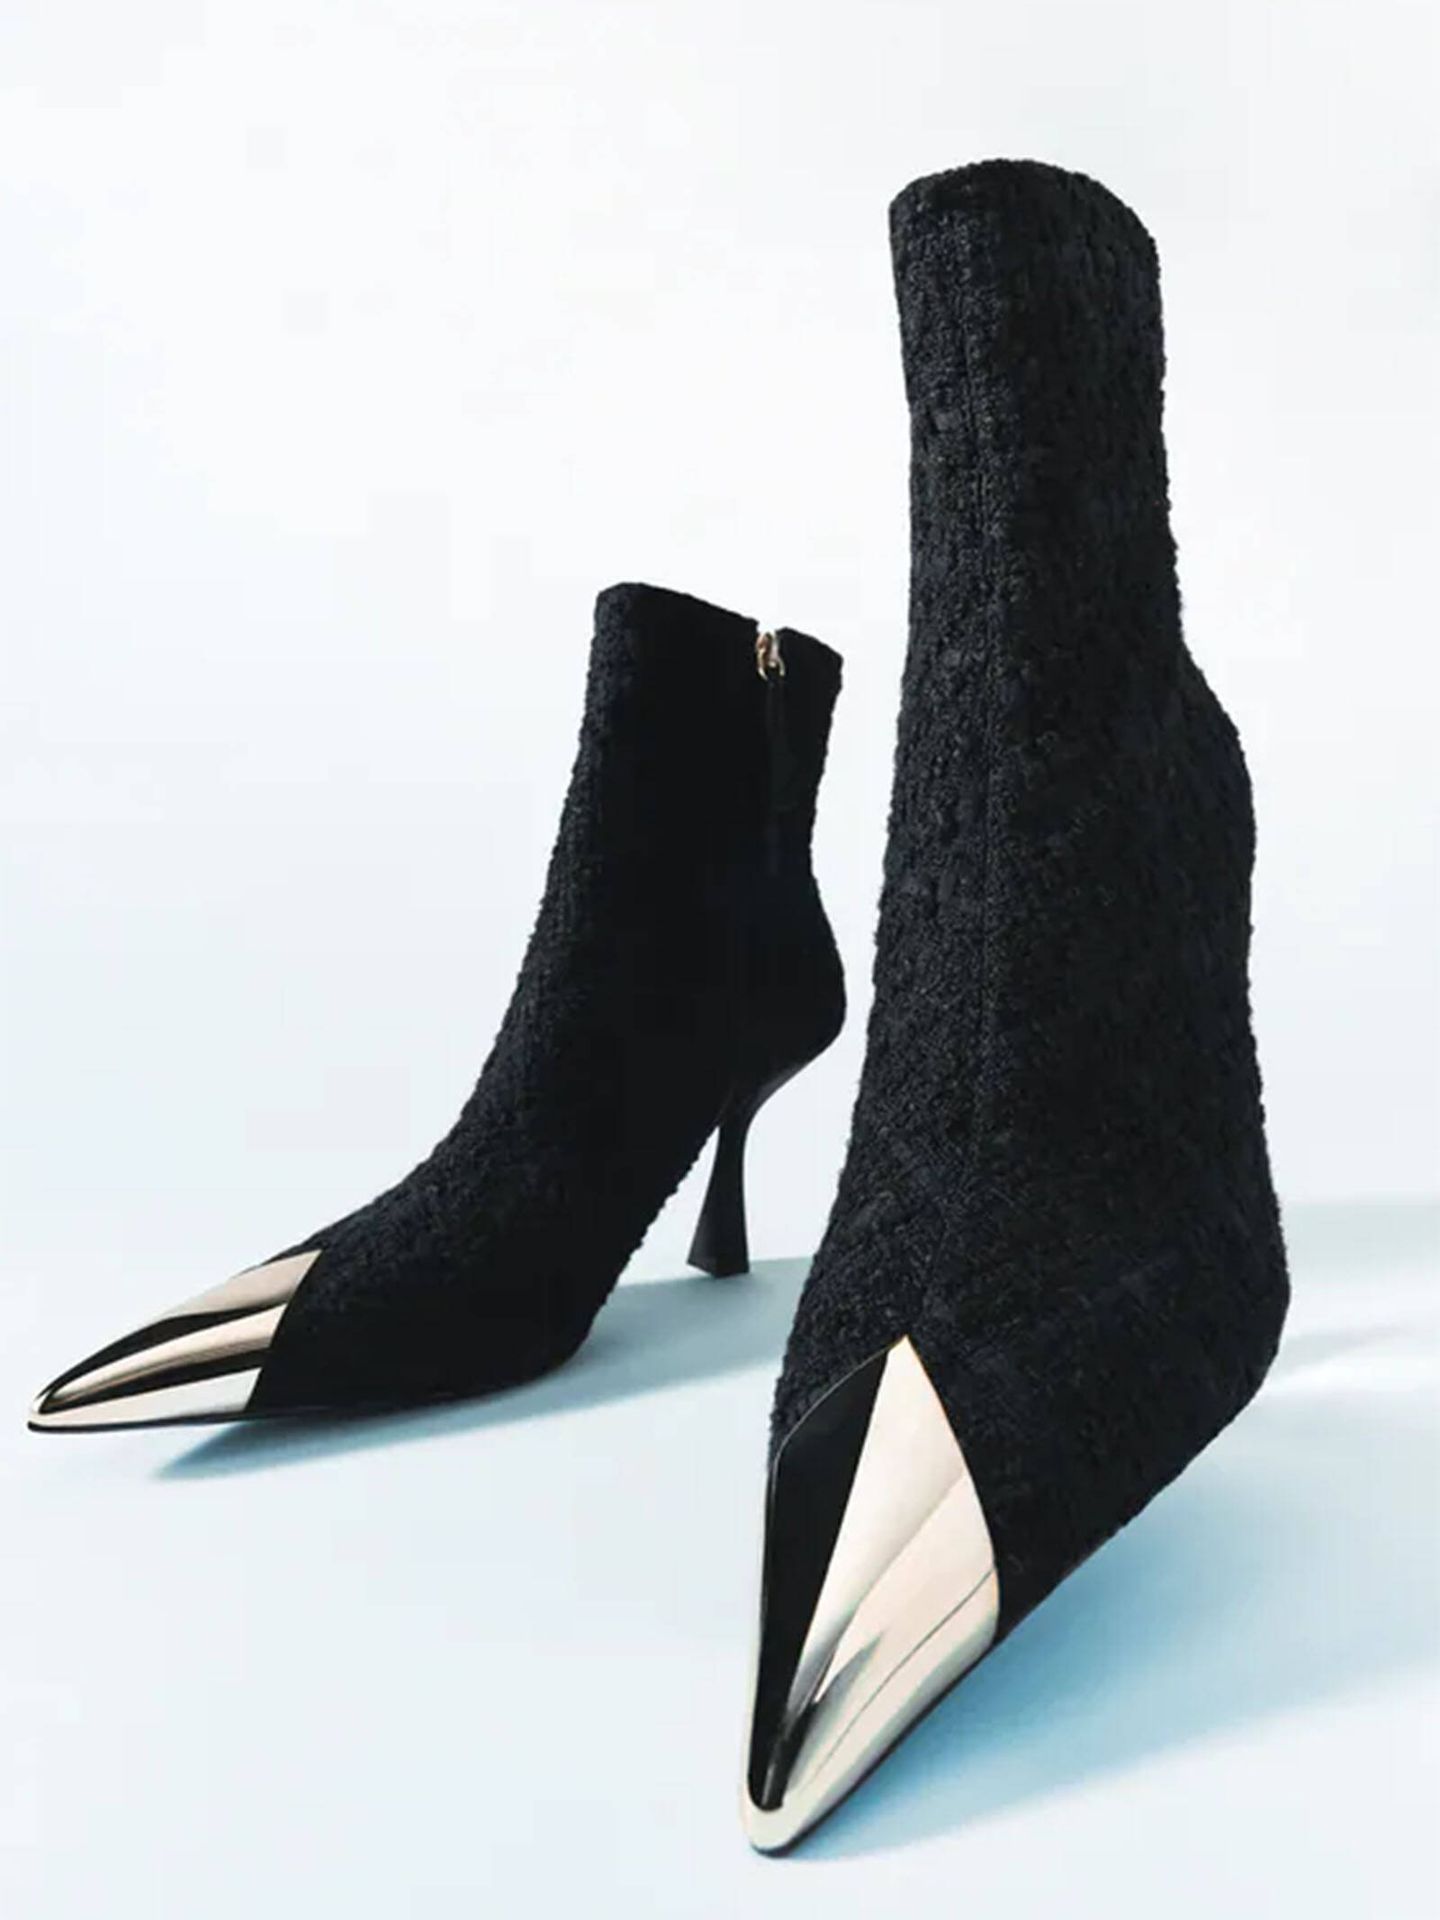 Los originales zapatos de Zara en tejido de tweed. (Zara/Cortesía)